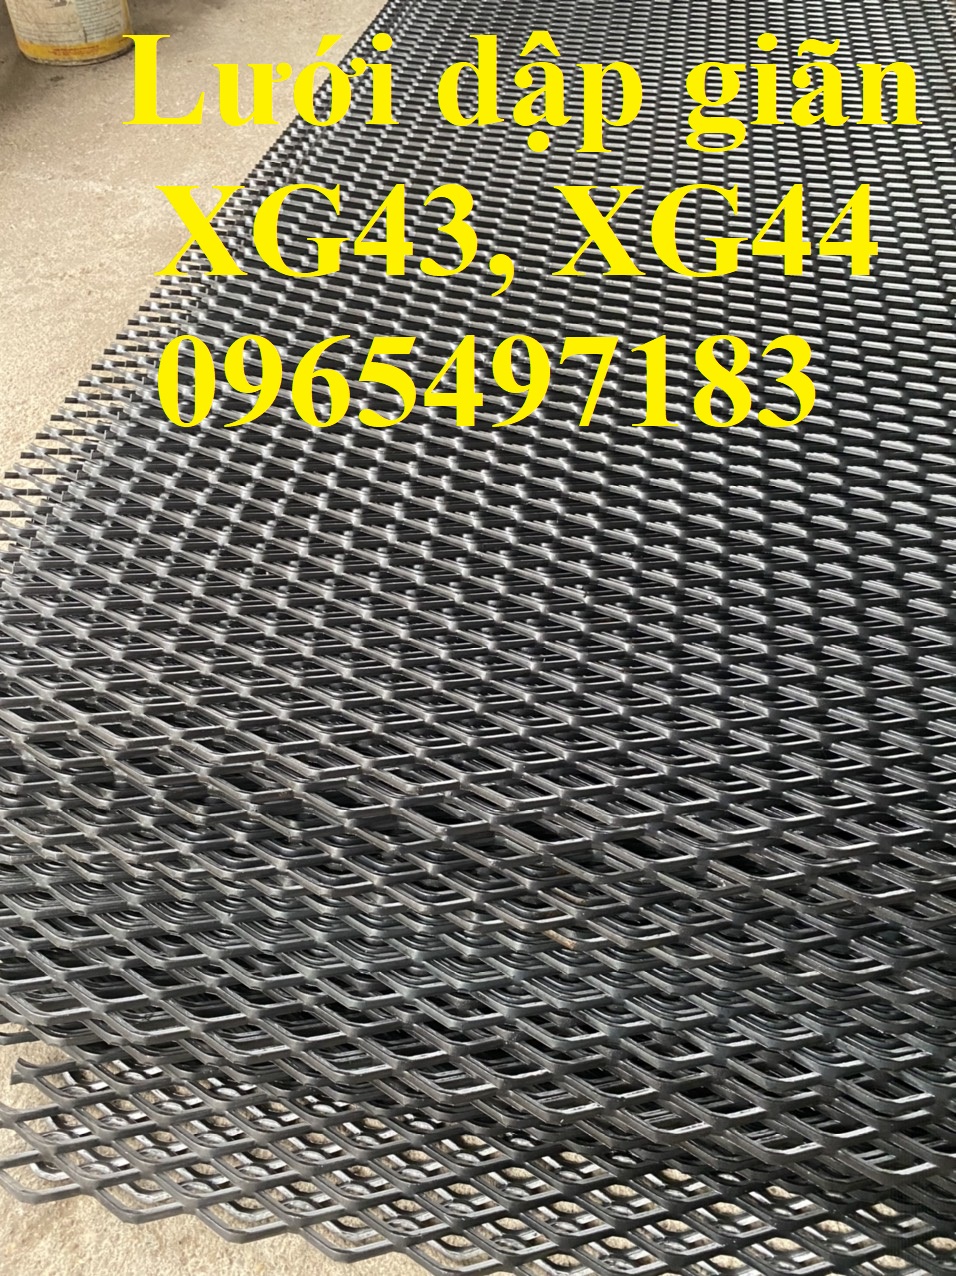 lưới hình thoi  XG43 dày 3mm mắt 22x50.8, lưới kéo giãn 43